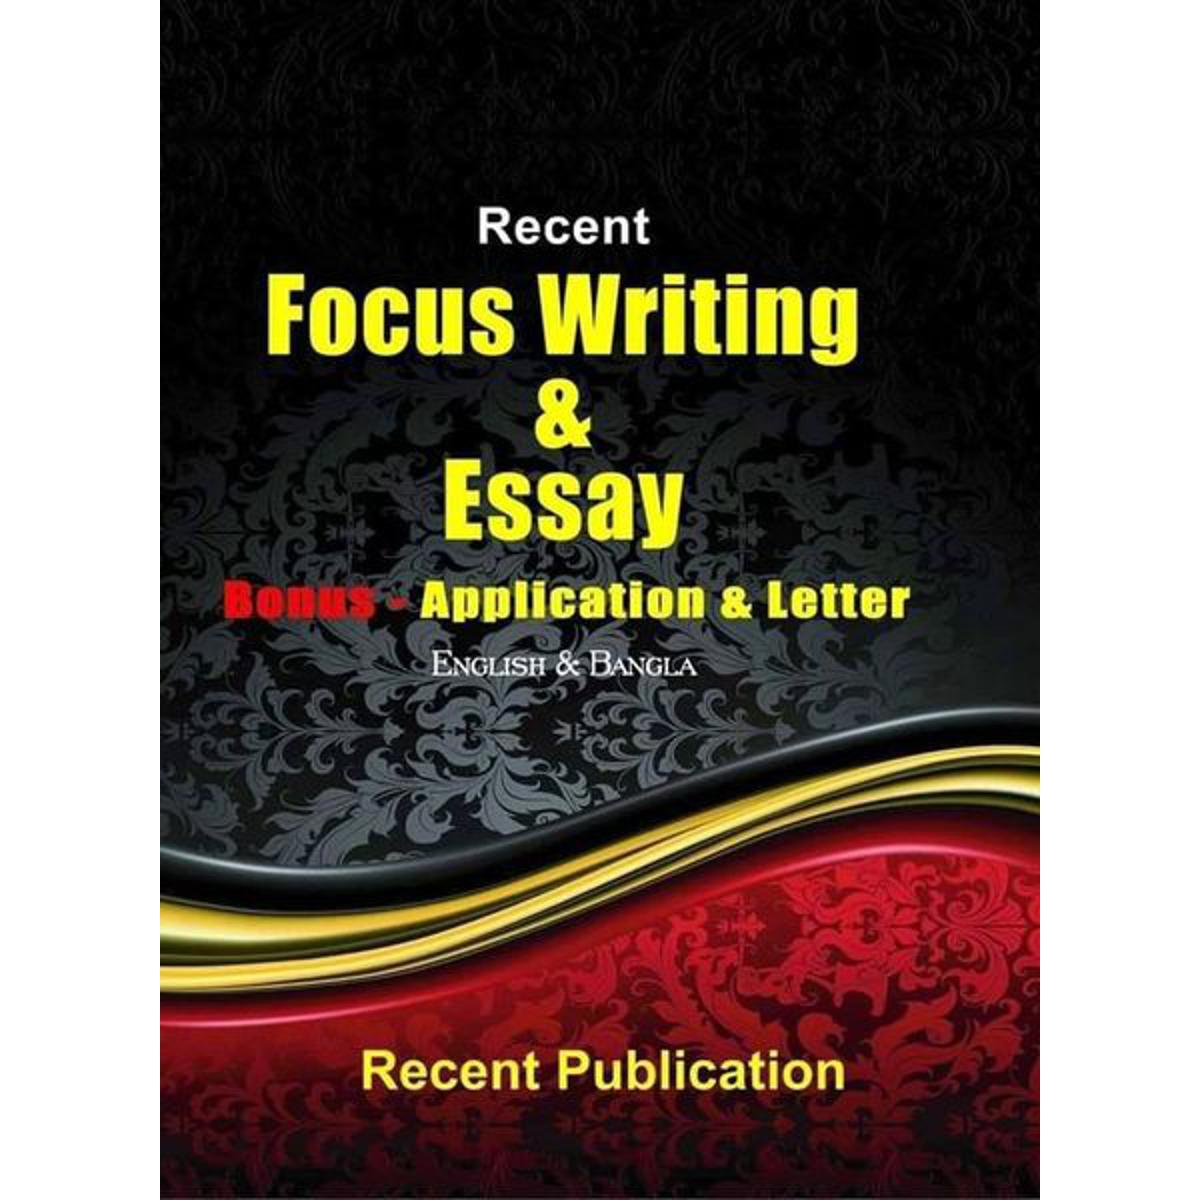 Recent Focus Writing & Essay